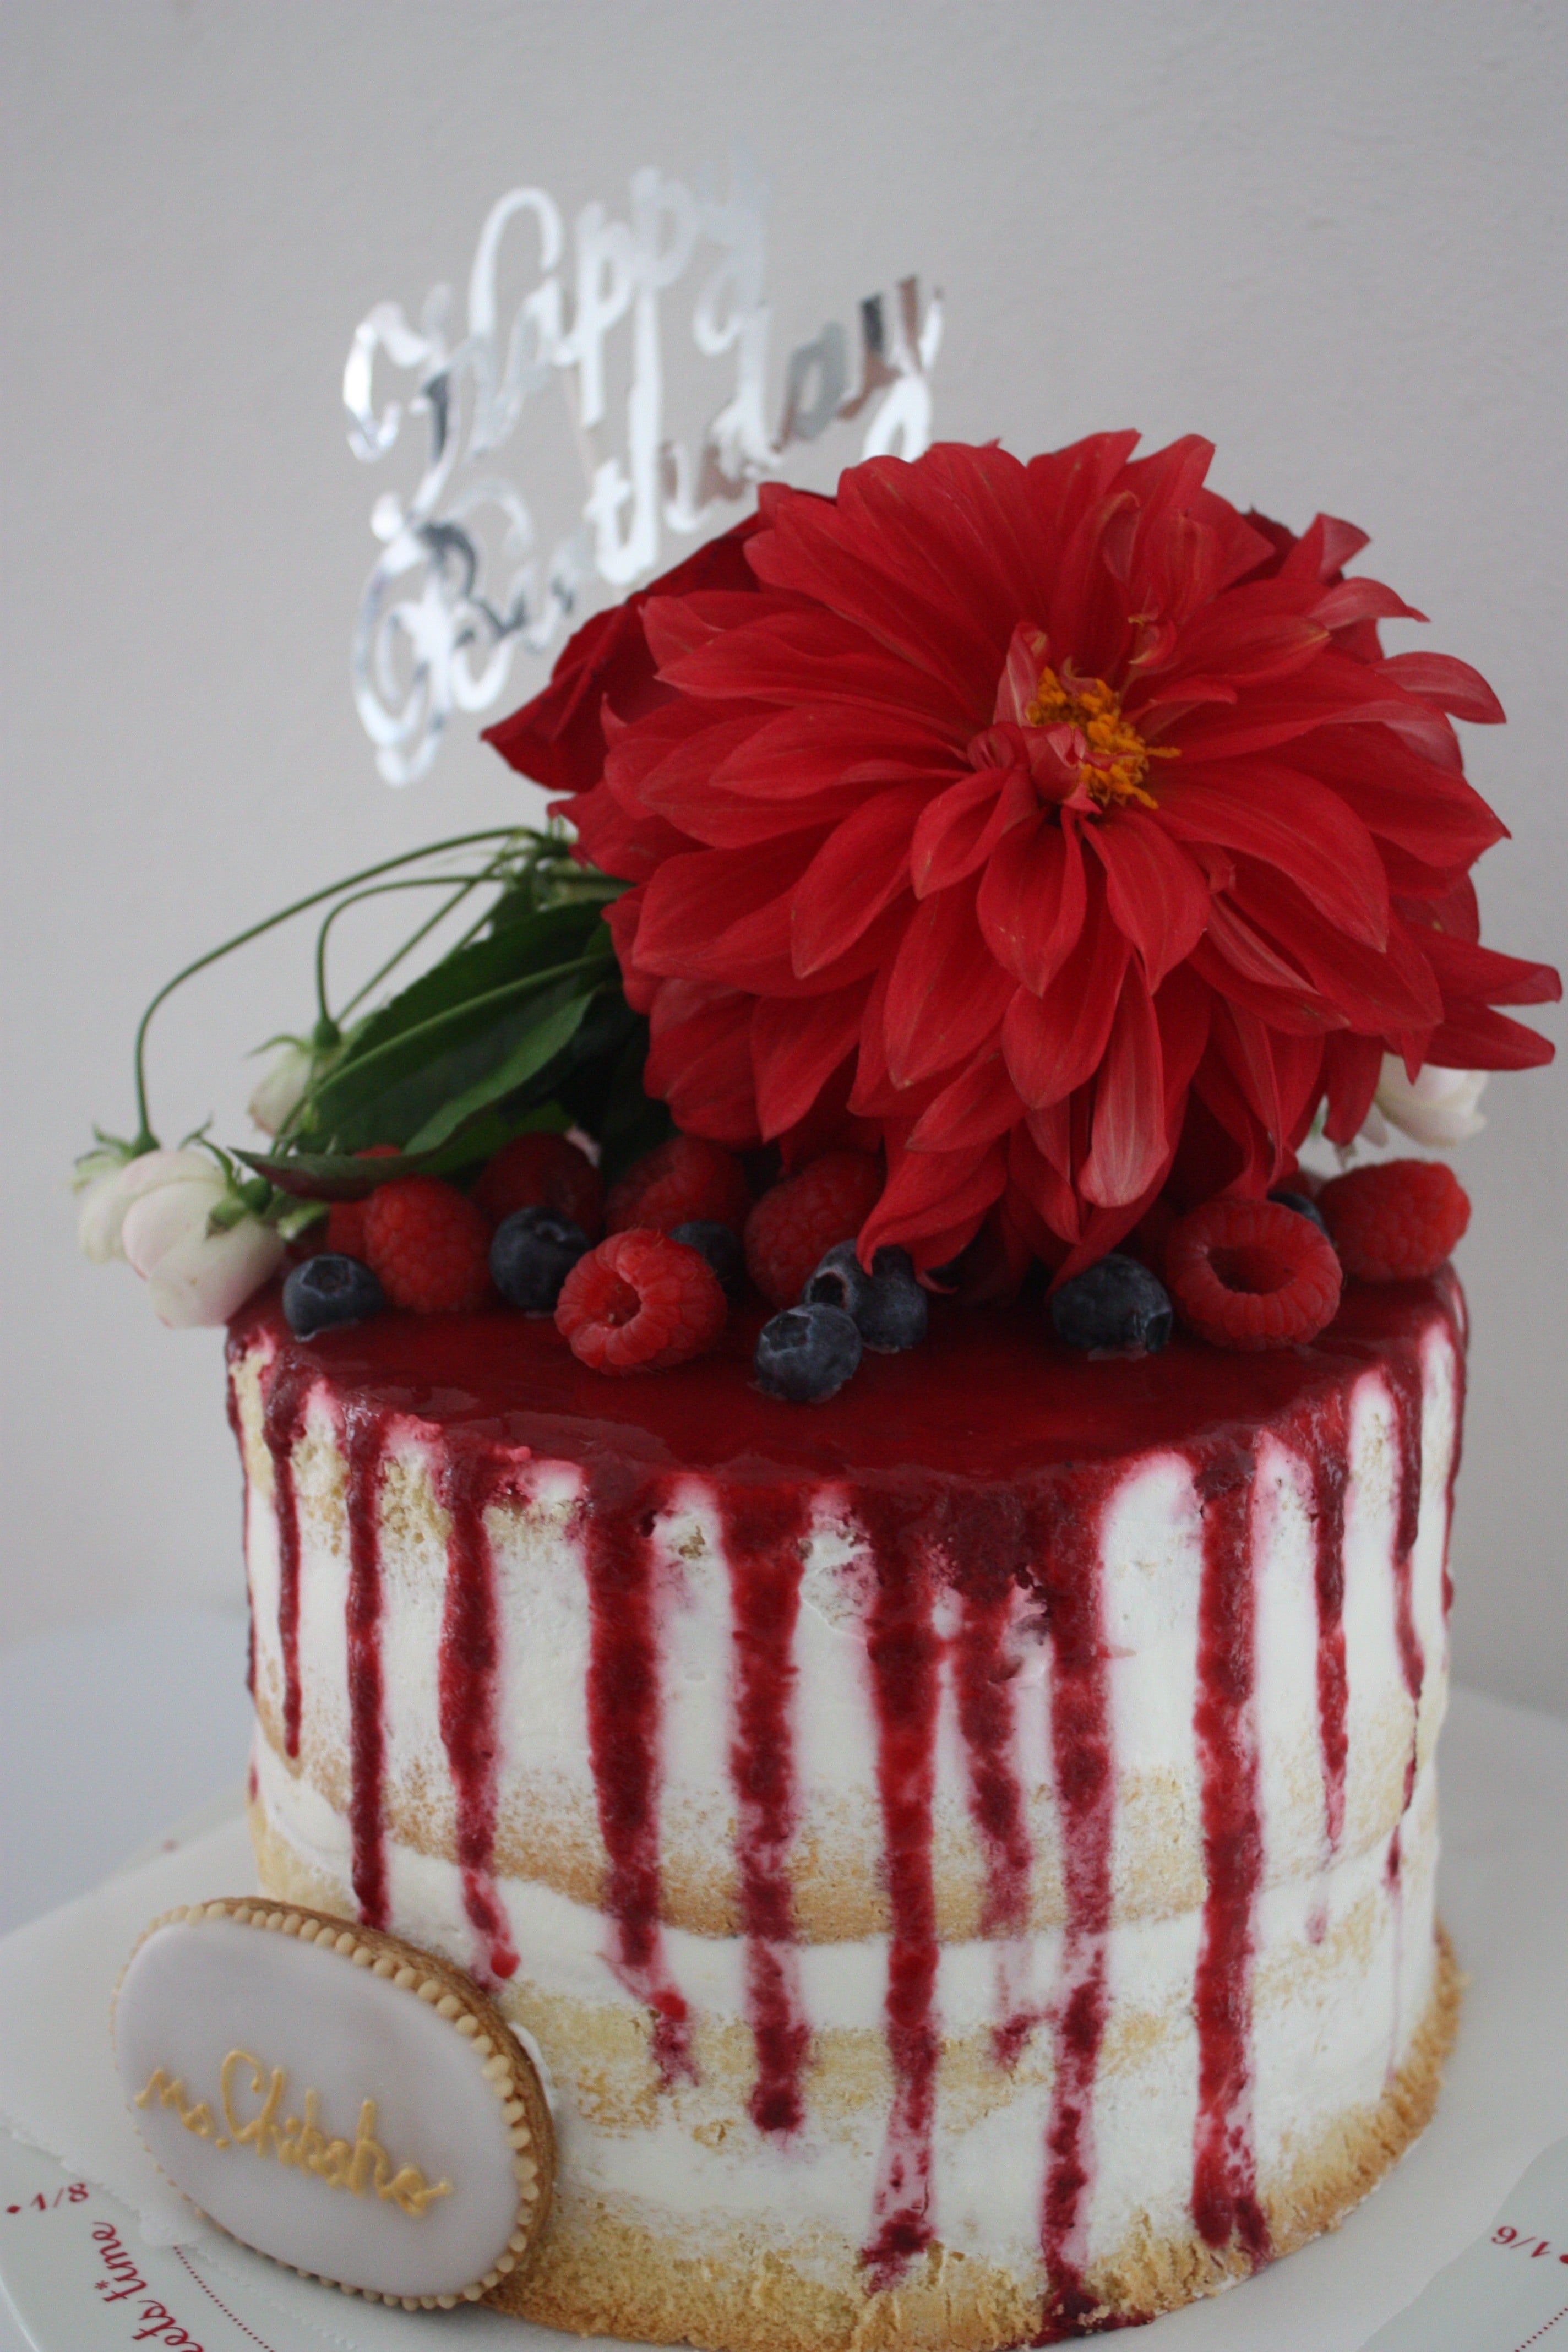 赤い花の誕生日ケーキ パリ風 ママスタイル Blog Madame Figaro Jp フィガロジャポン